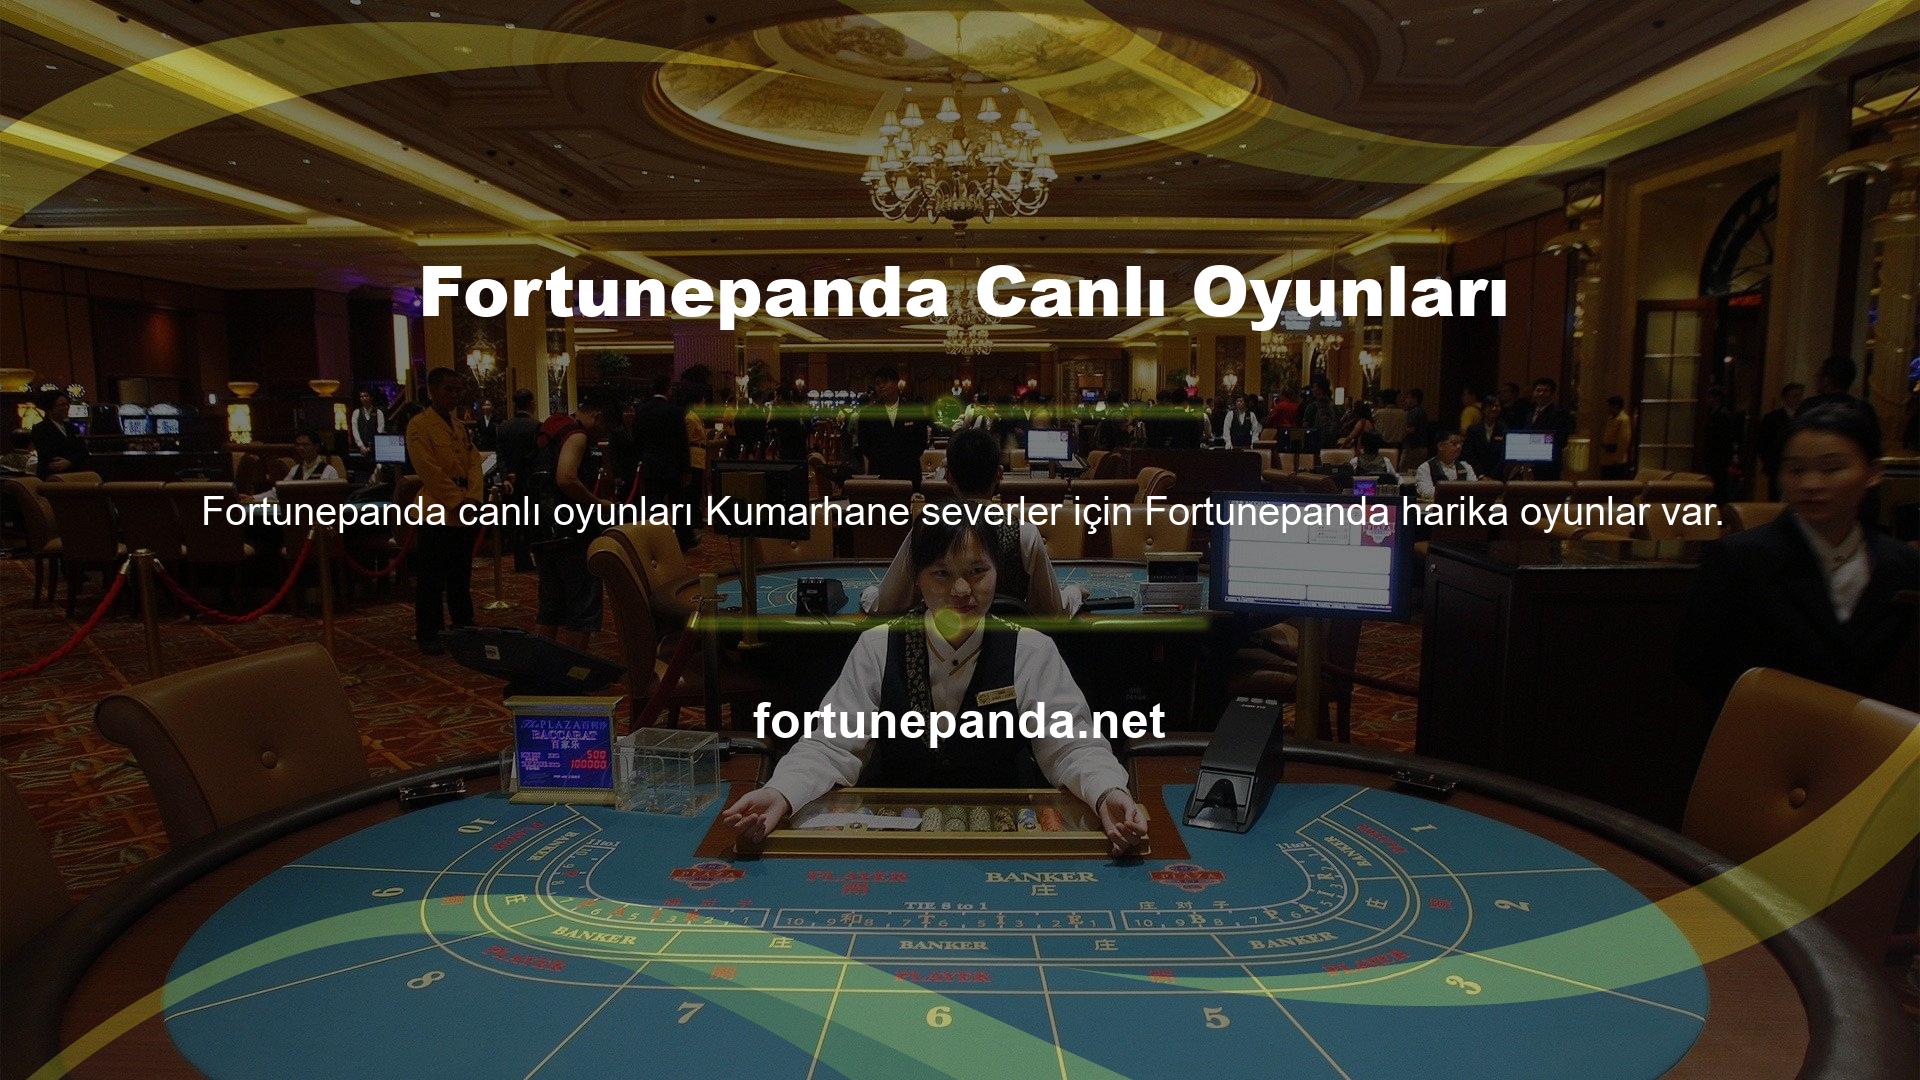 Fortunepanda casino bölümünde slot makineleri ve diğer oto oyunlarını oynayabilirsiniz